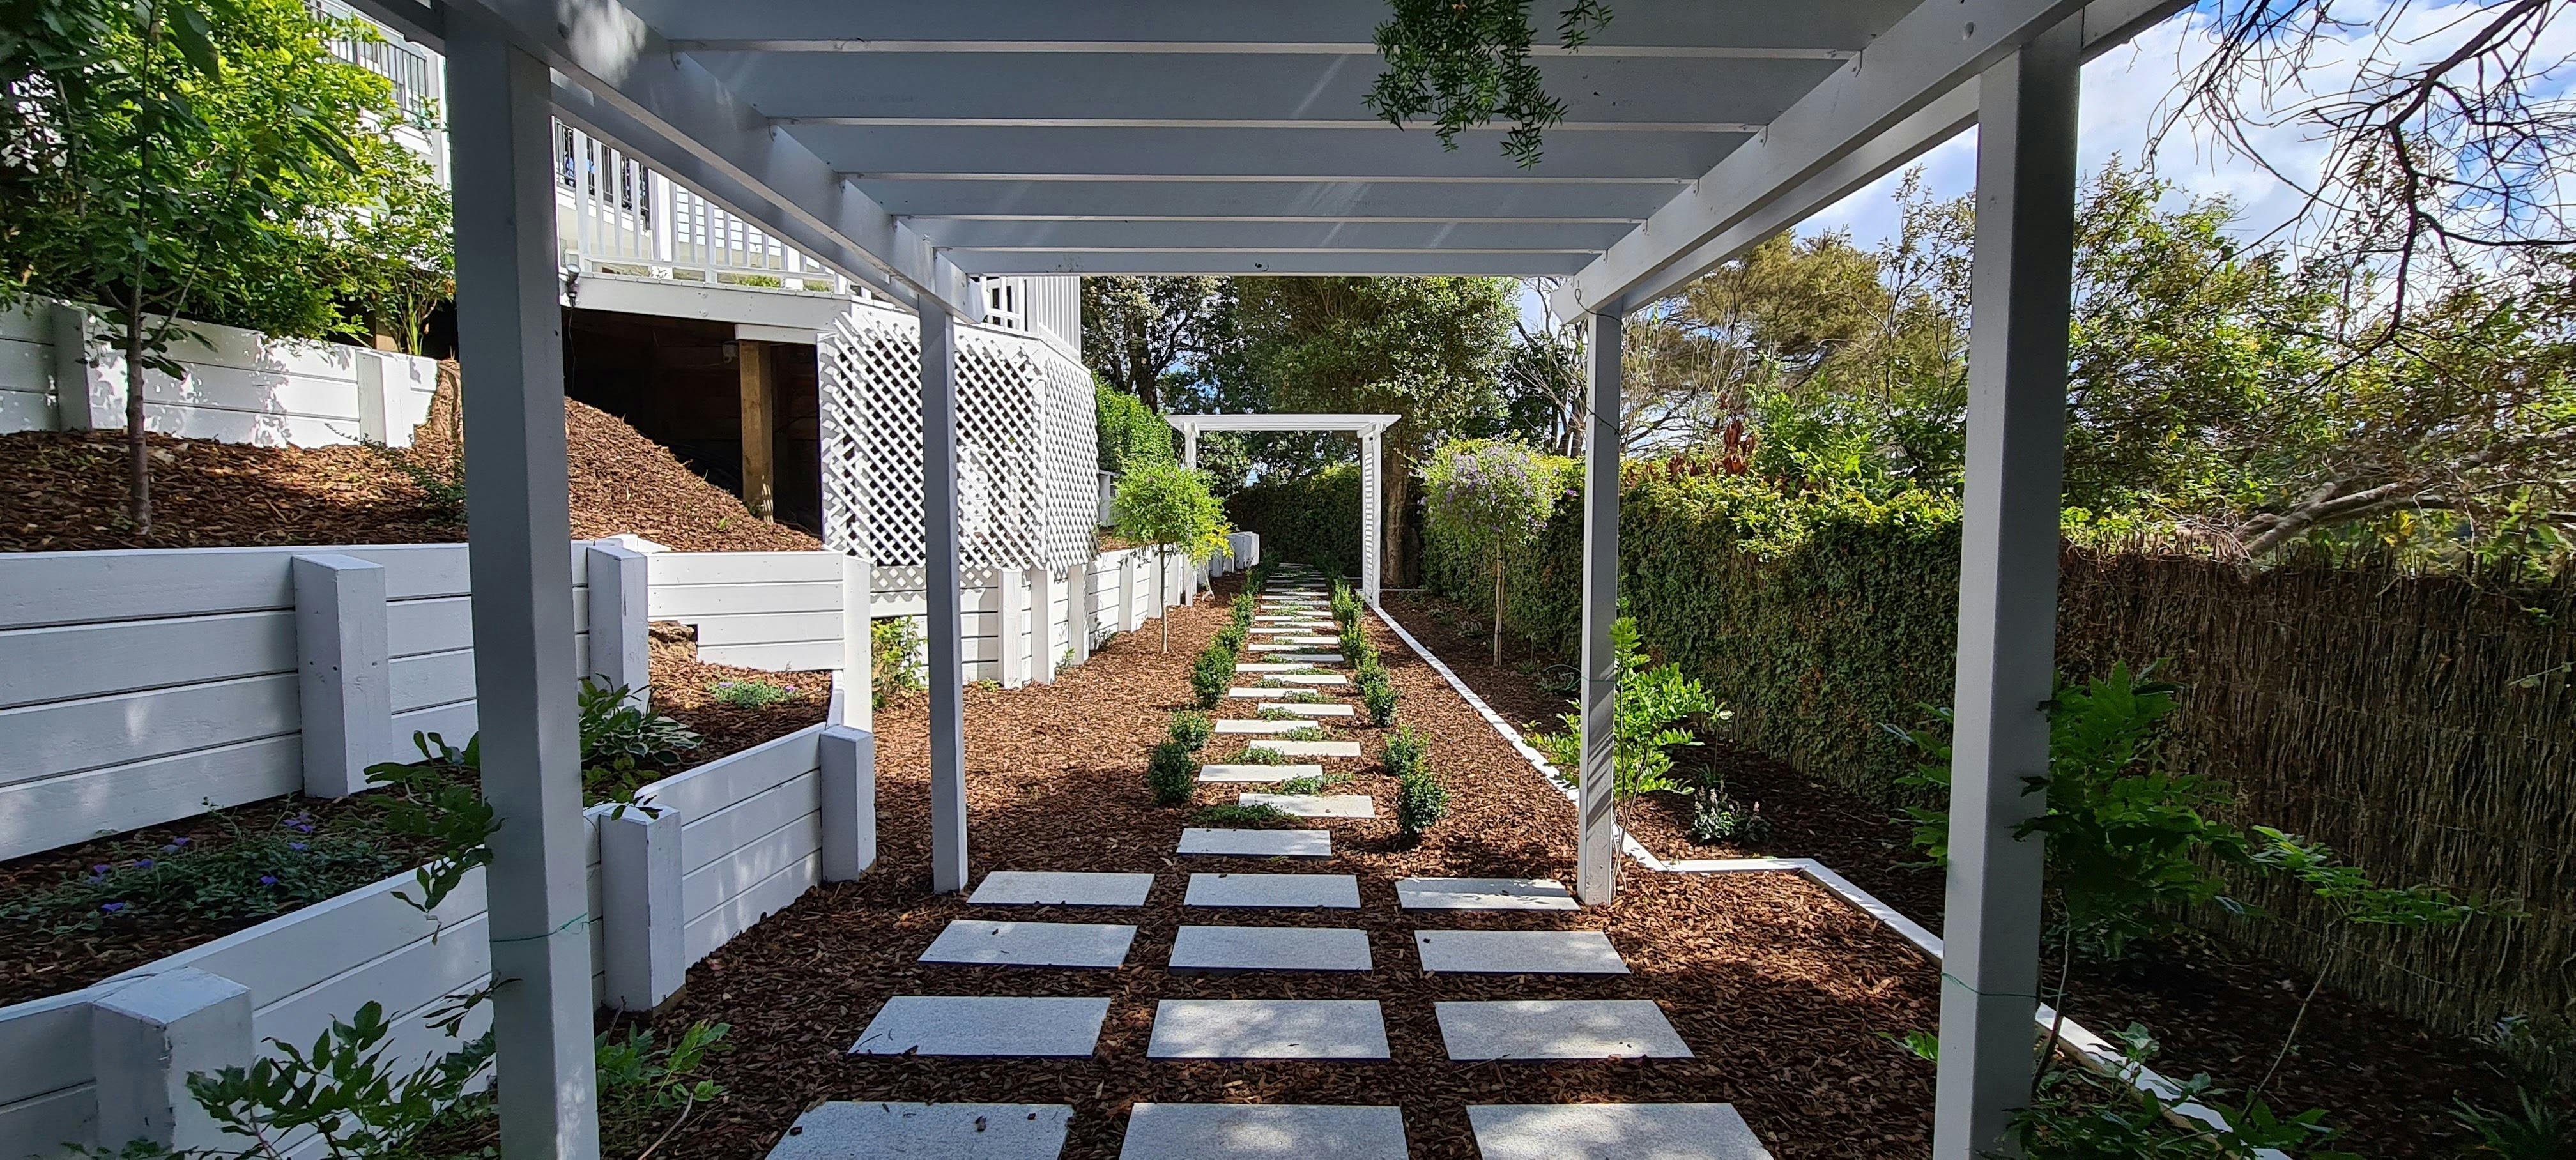 garden design services, garden solutions 